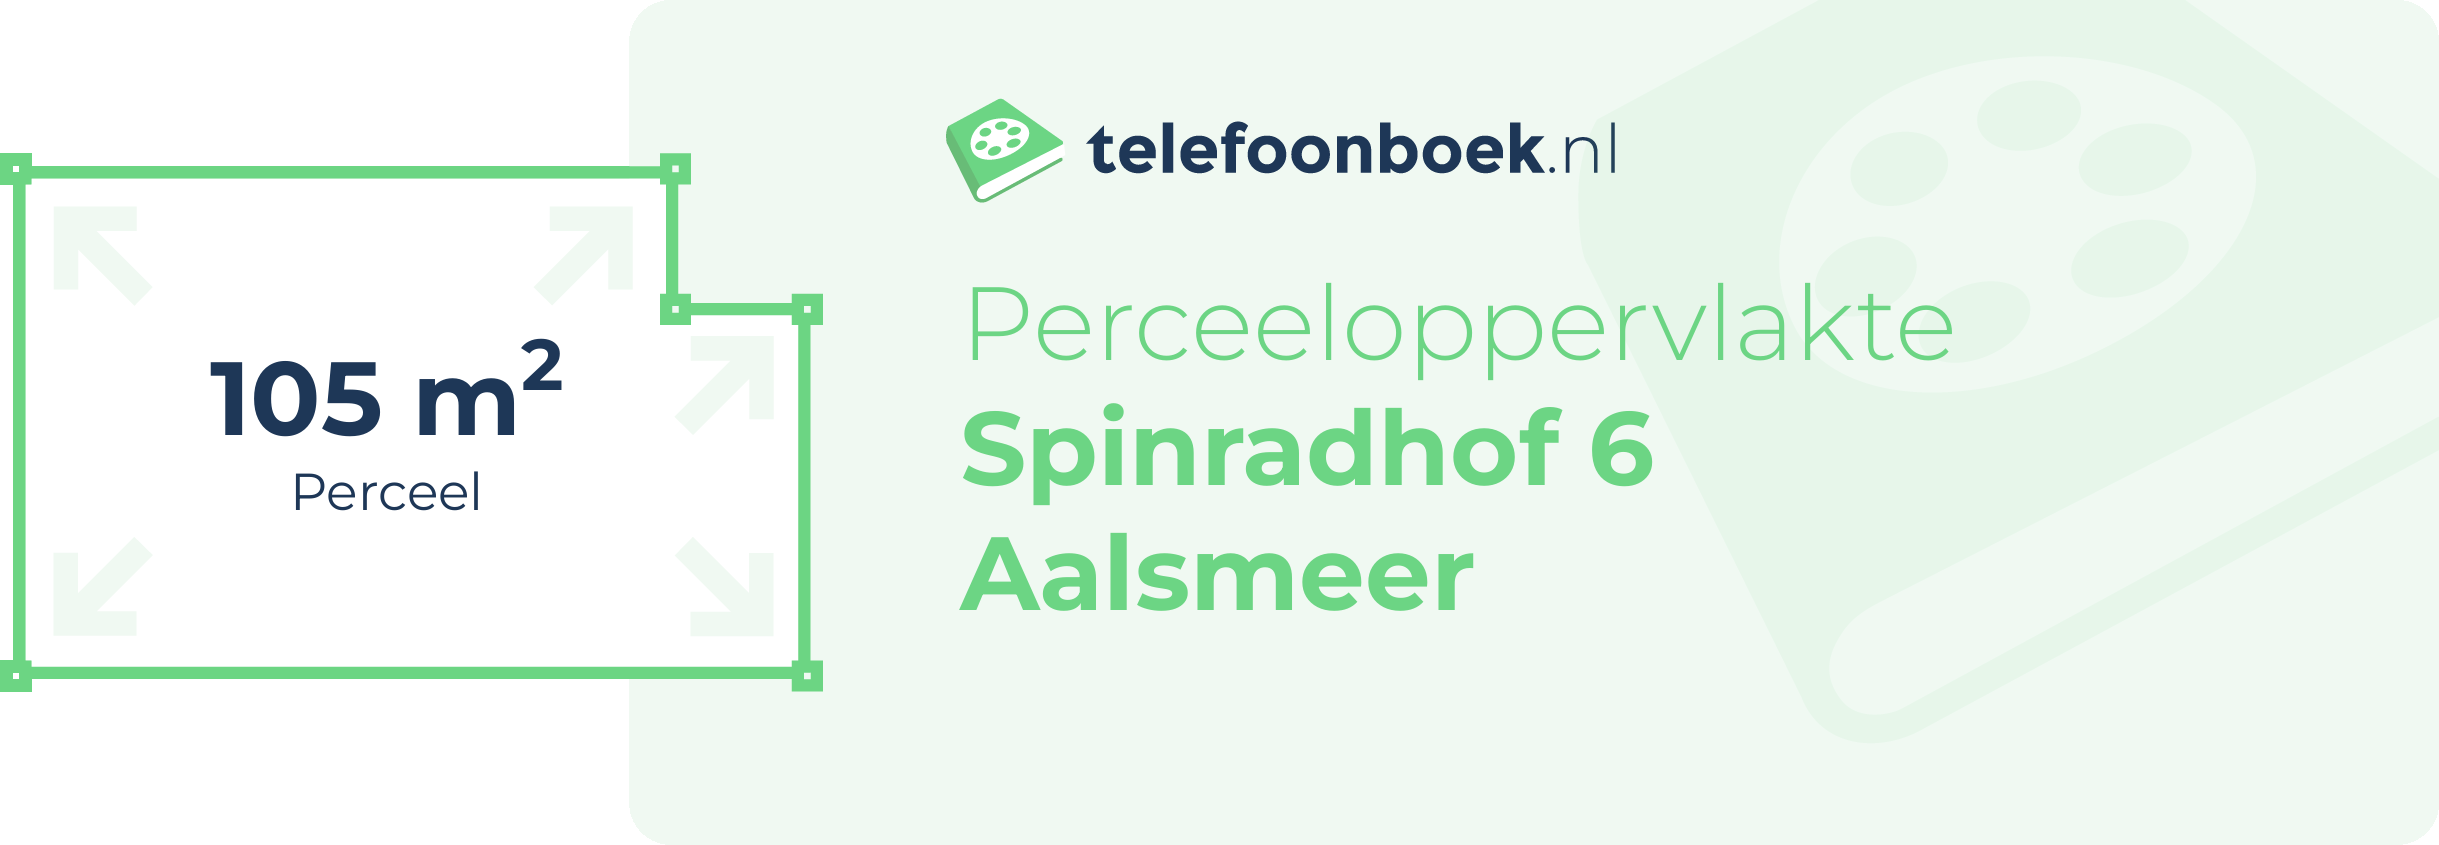 Perceeloppervlakte Spinradhof 6 Aalsmeer